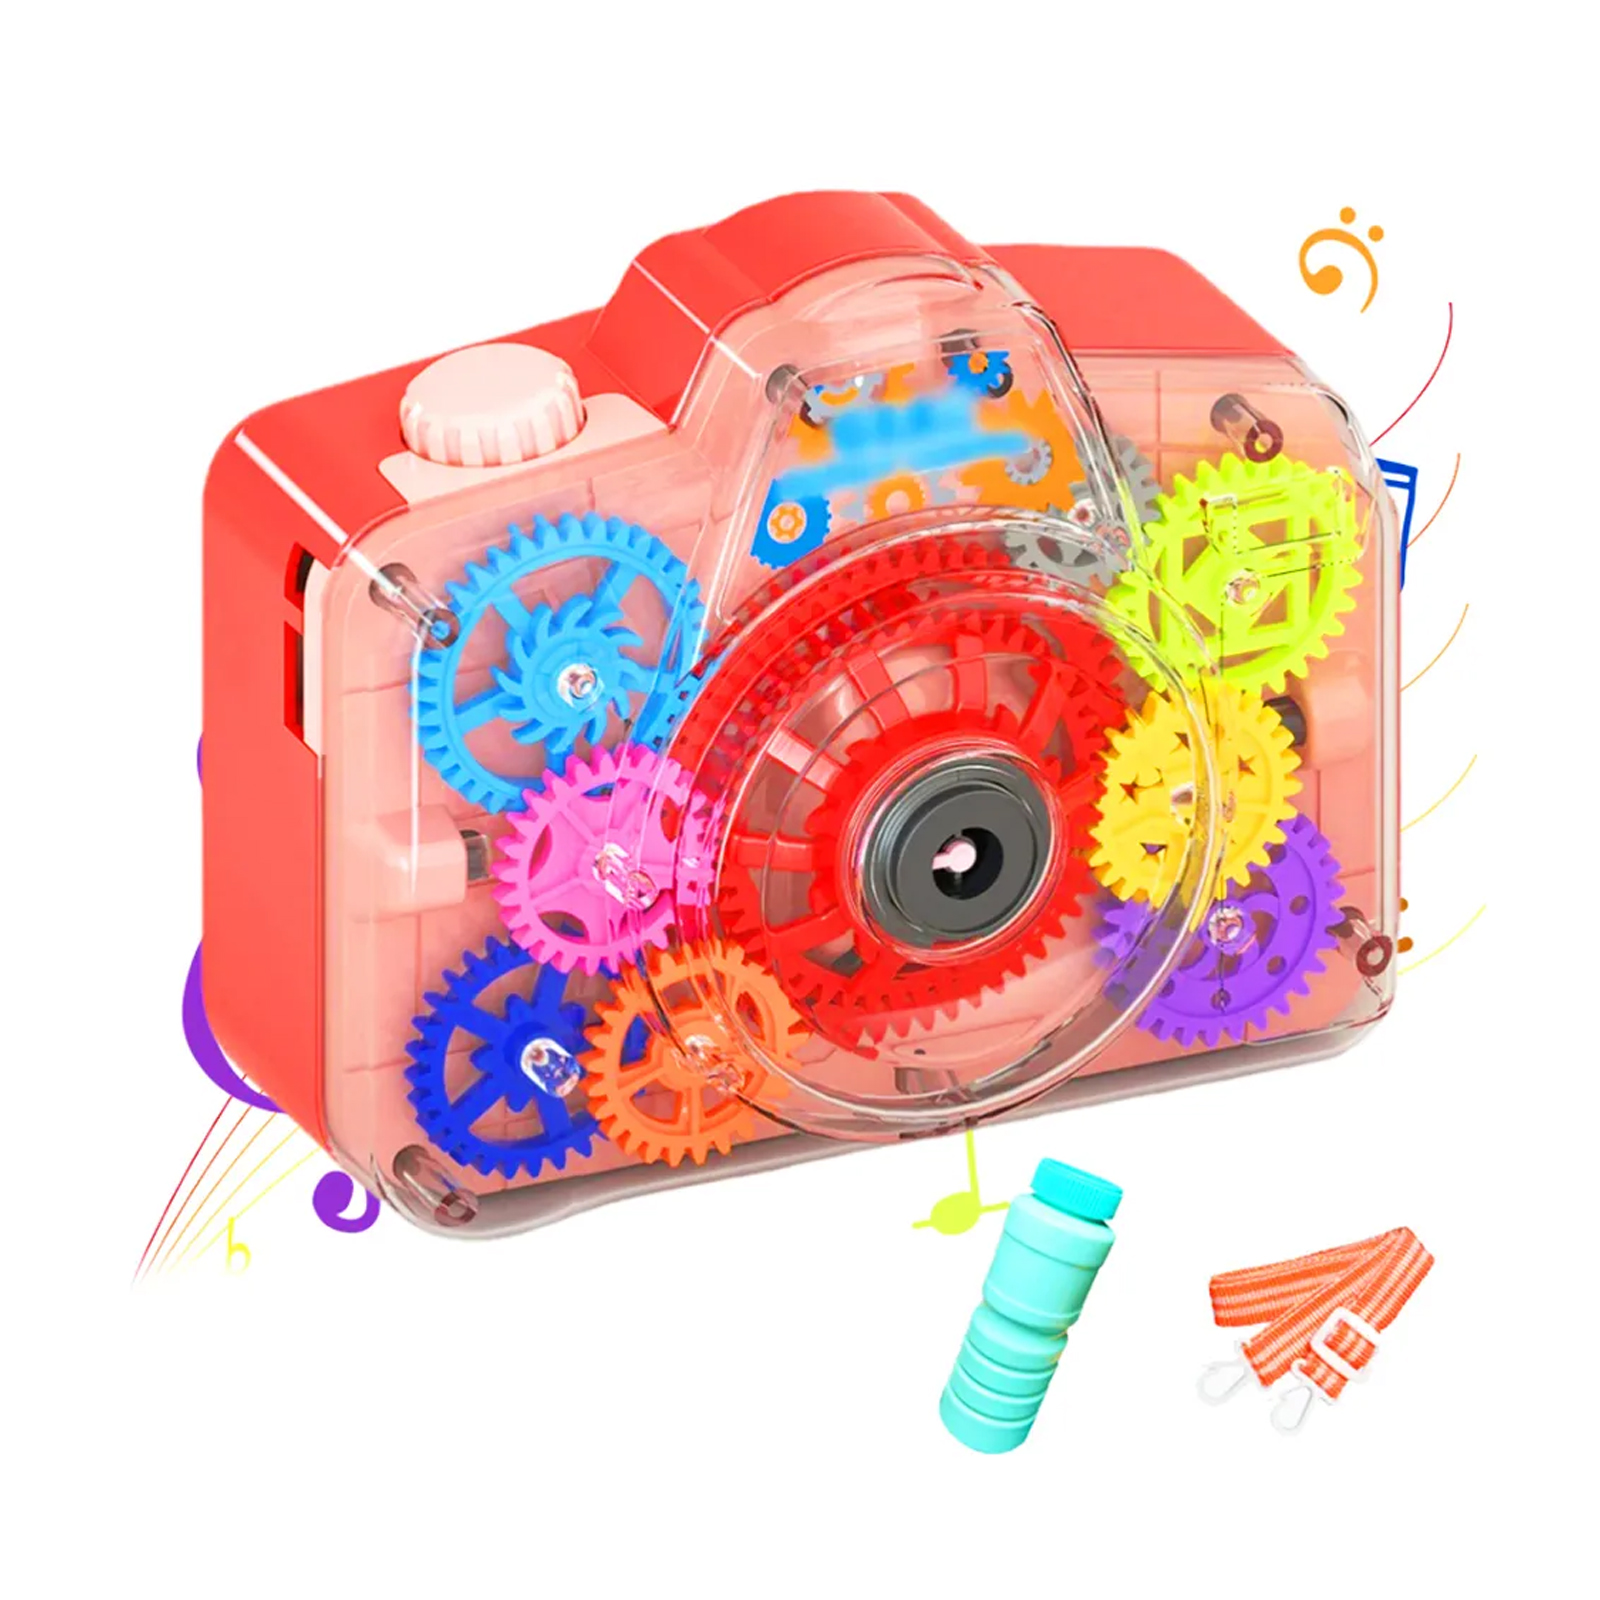 Генератор мыльных пузырей Market toys lab Фотоаппарат Bubble Camera красный мыльный генератор